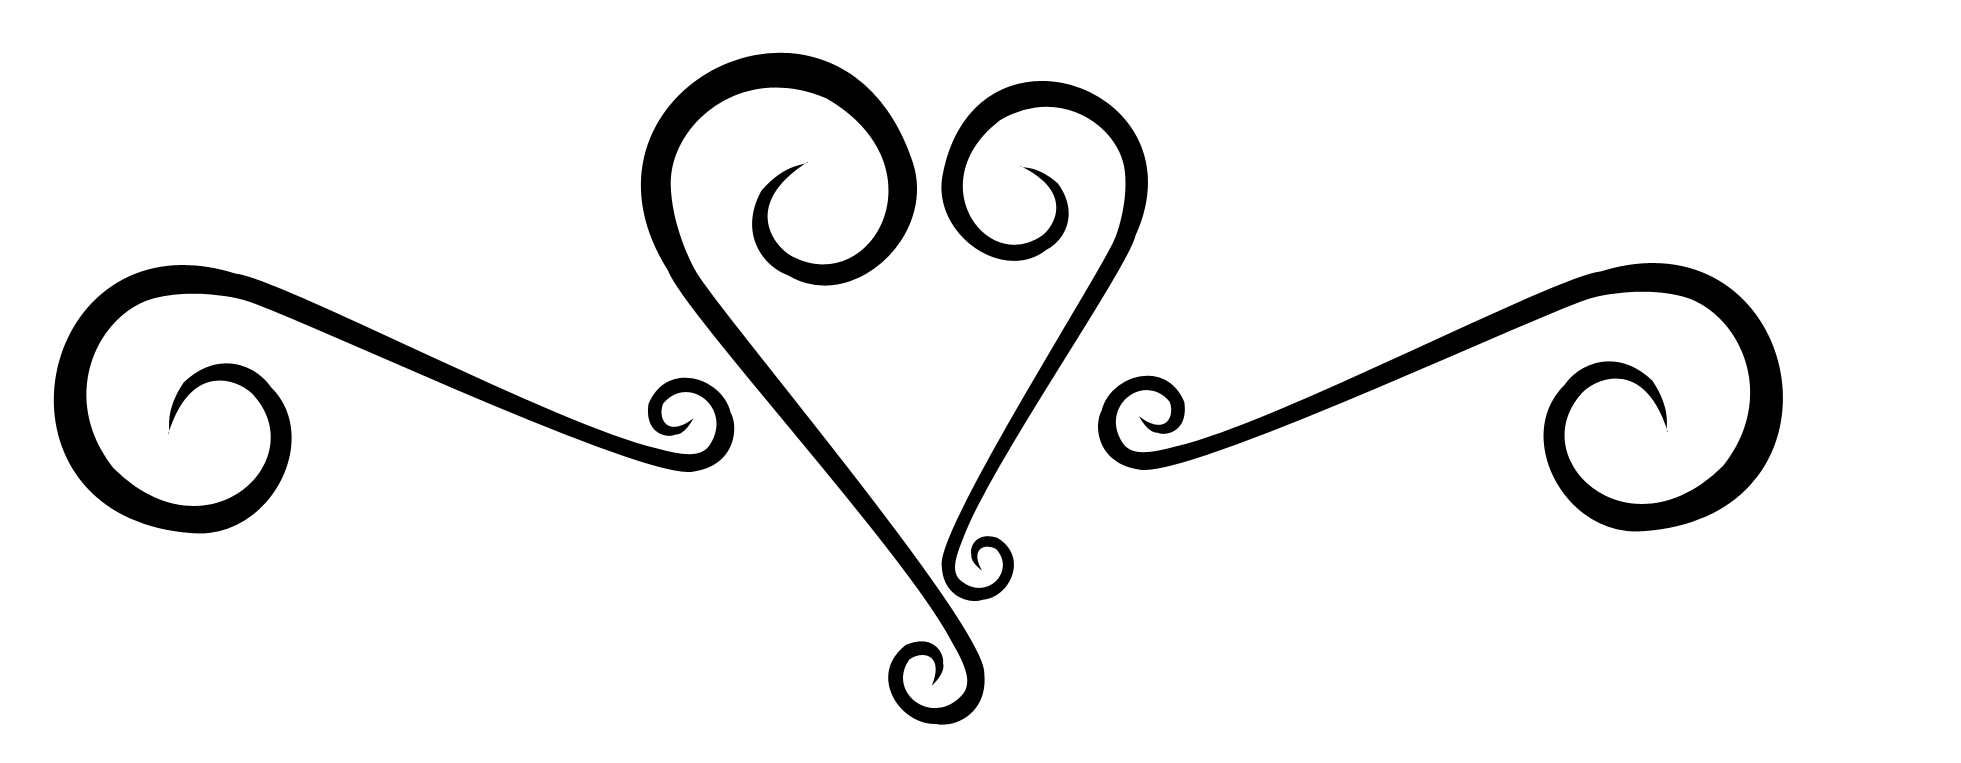 Swirly Heart Tattoo - Cliparts.co